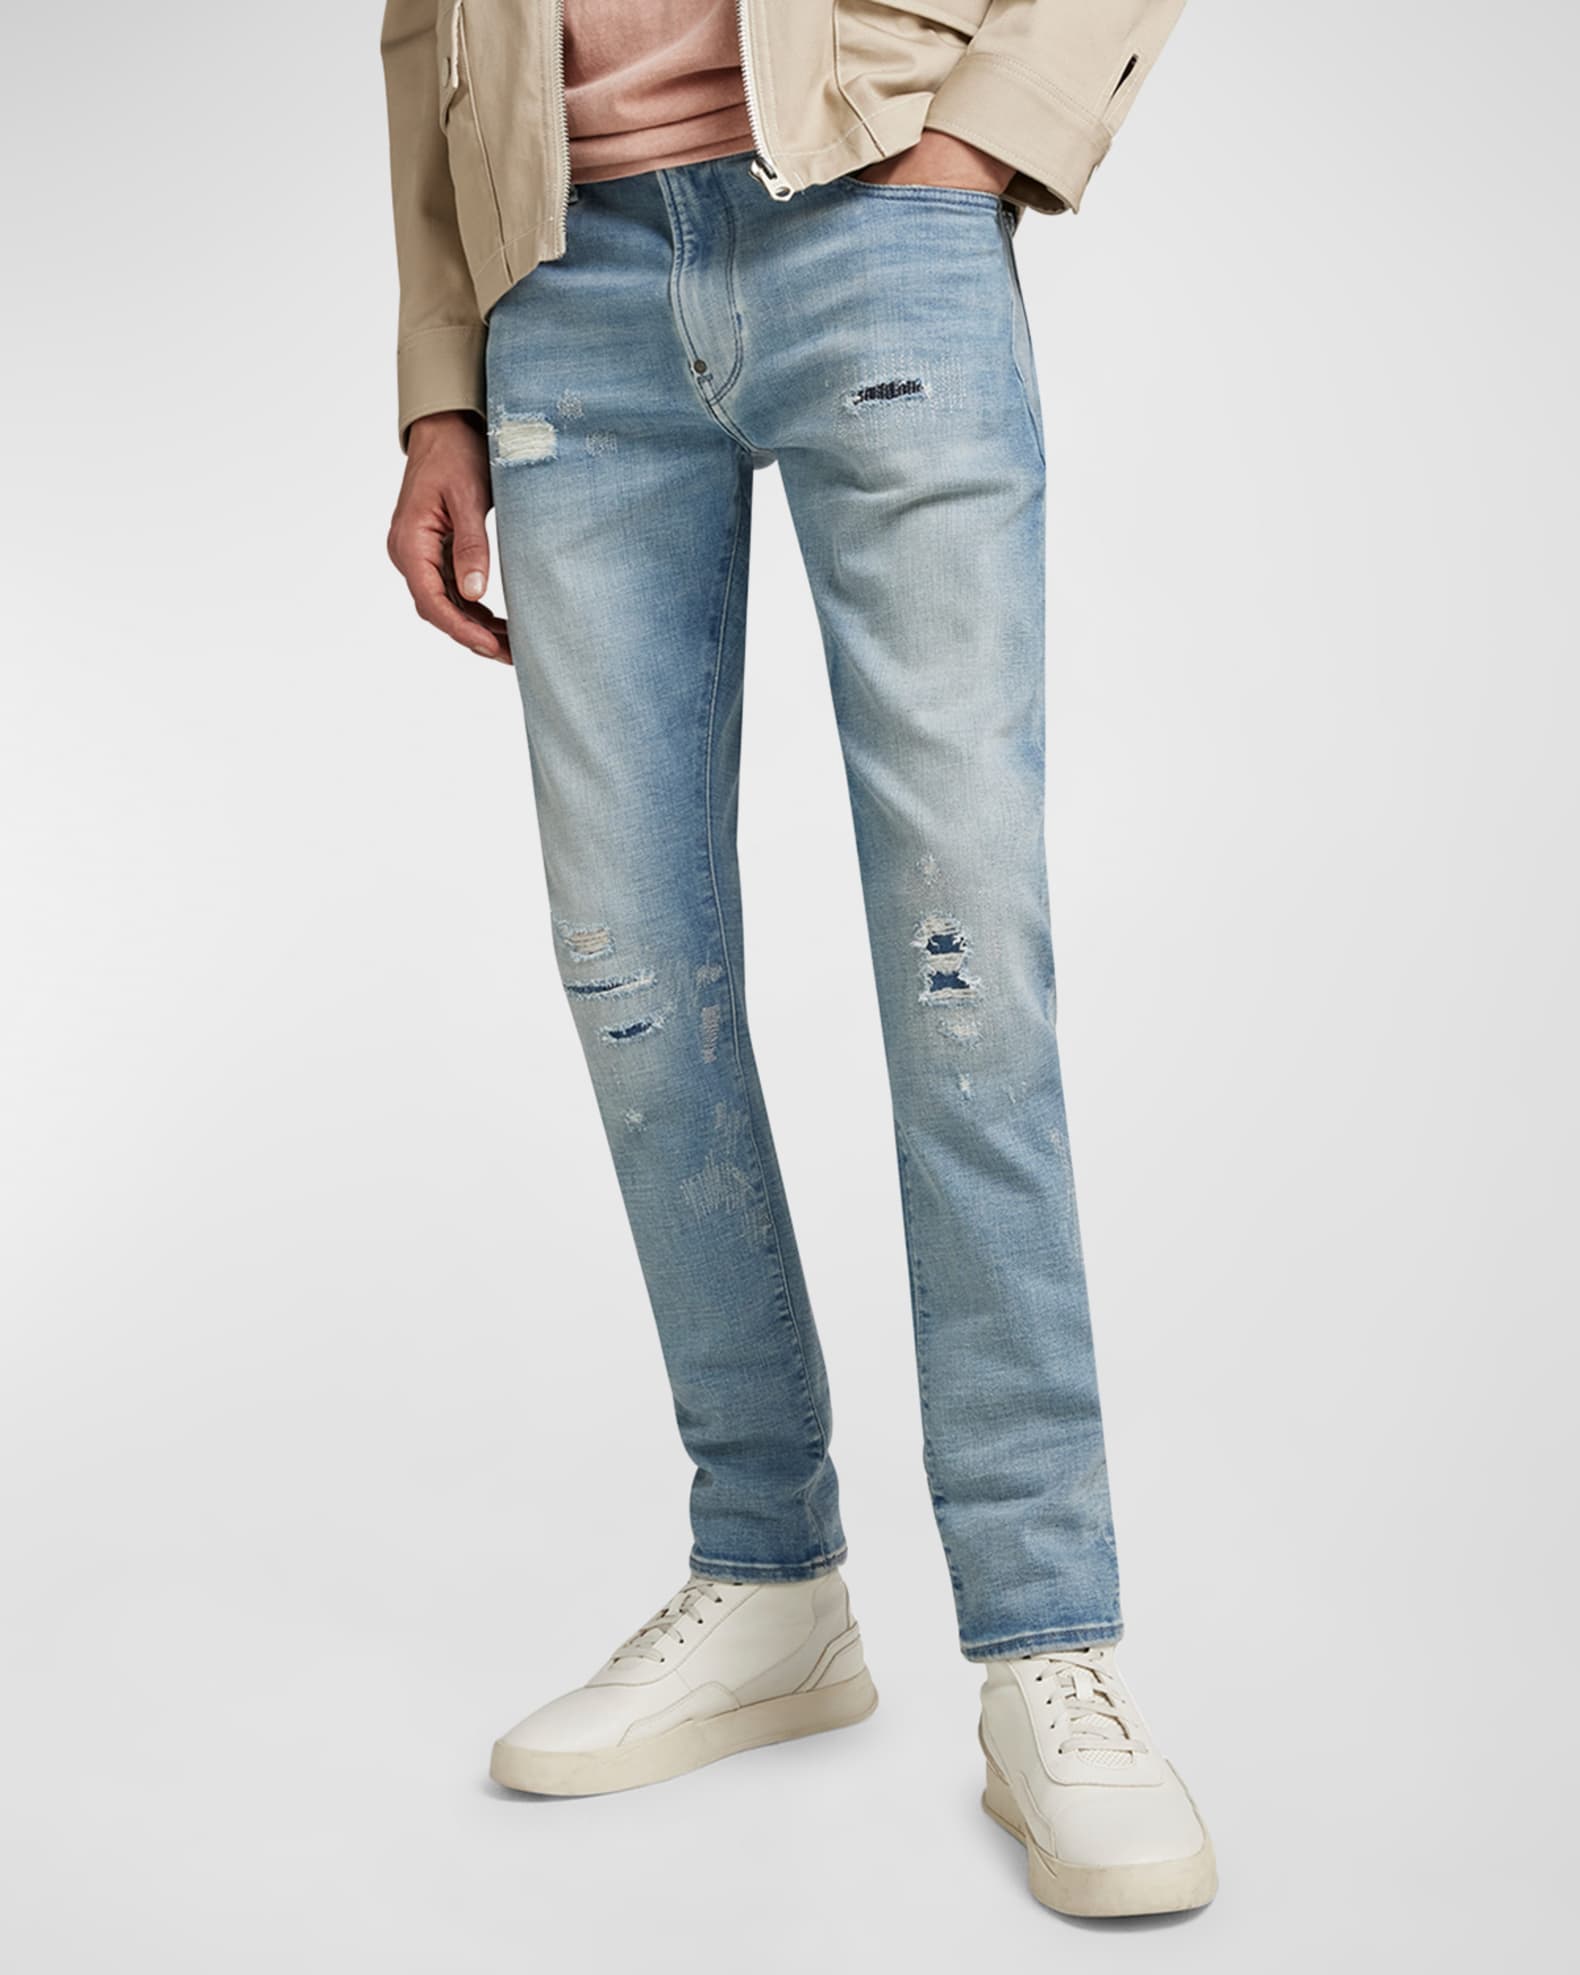 Zara - Skinny Jeans - Charcoal - Men